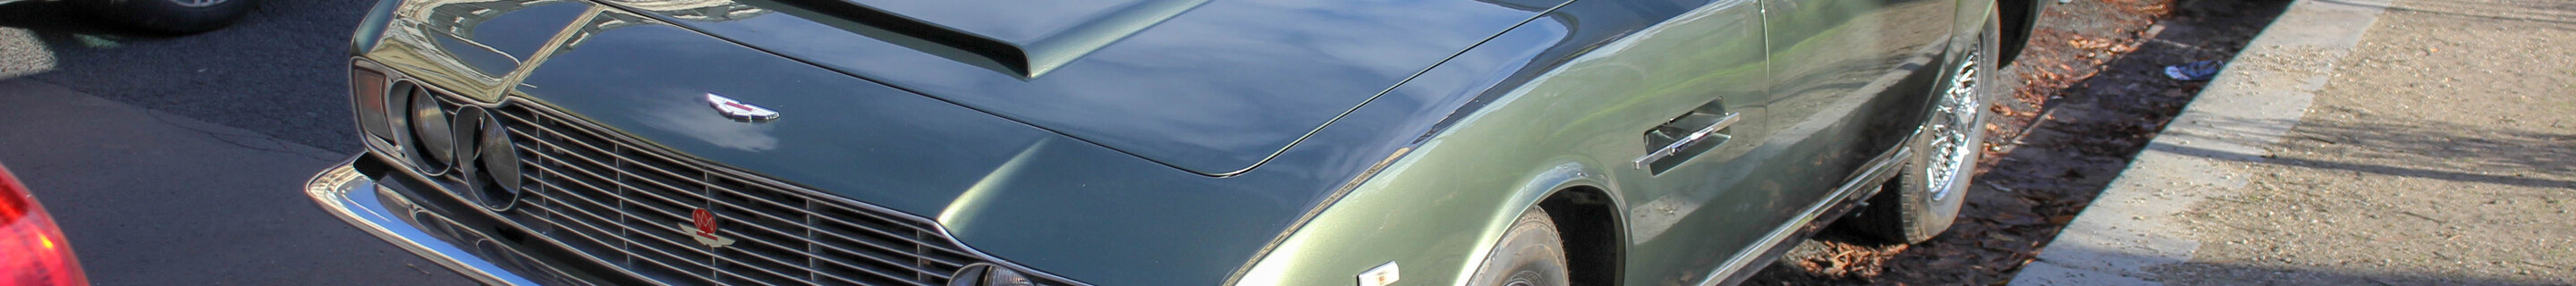 Aston Martin DBS Vantage